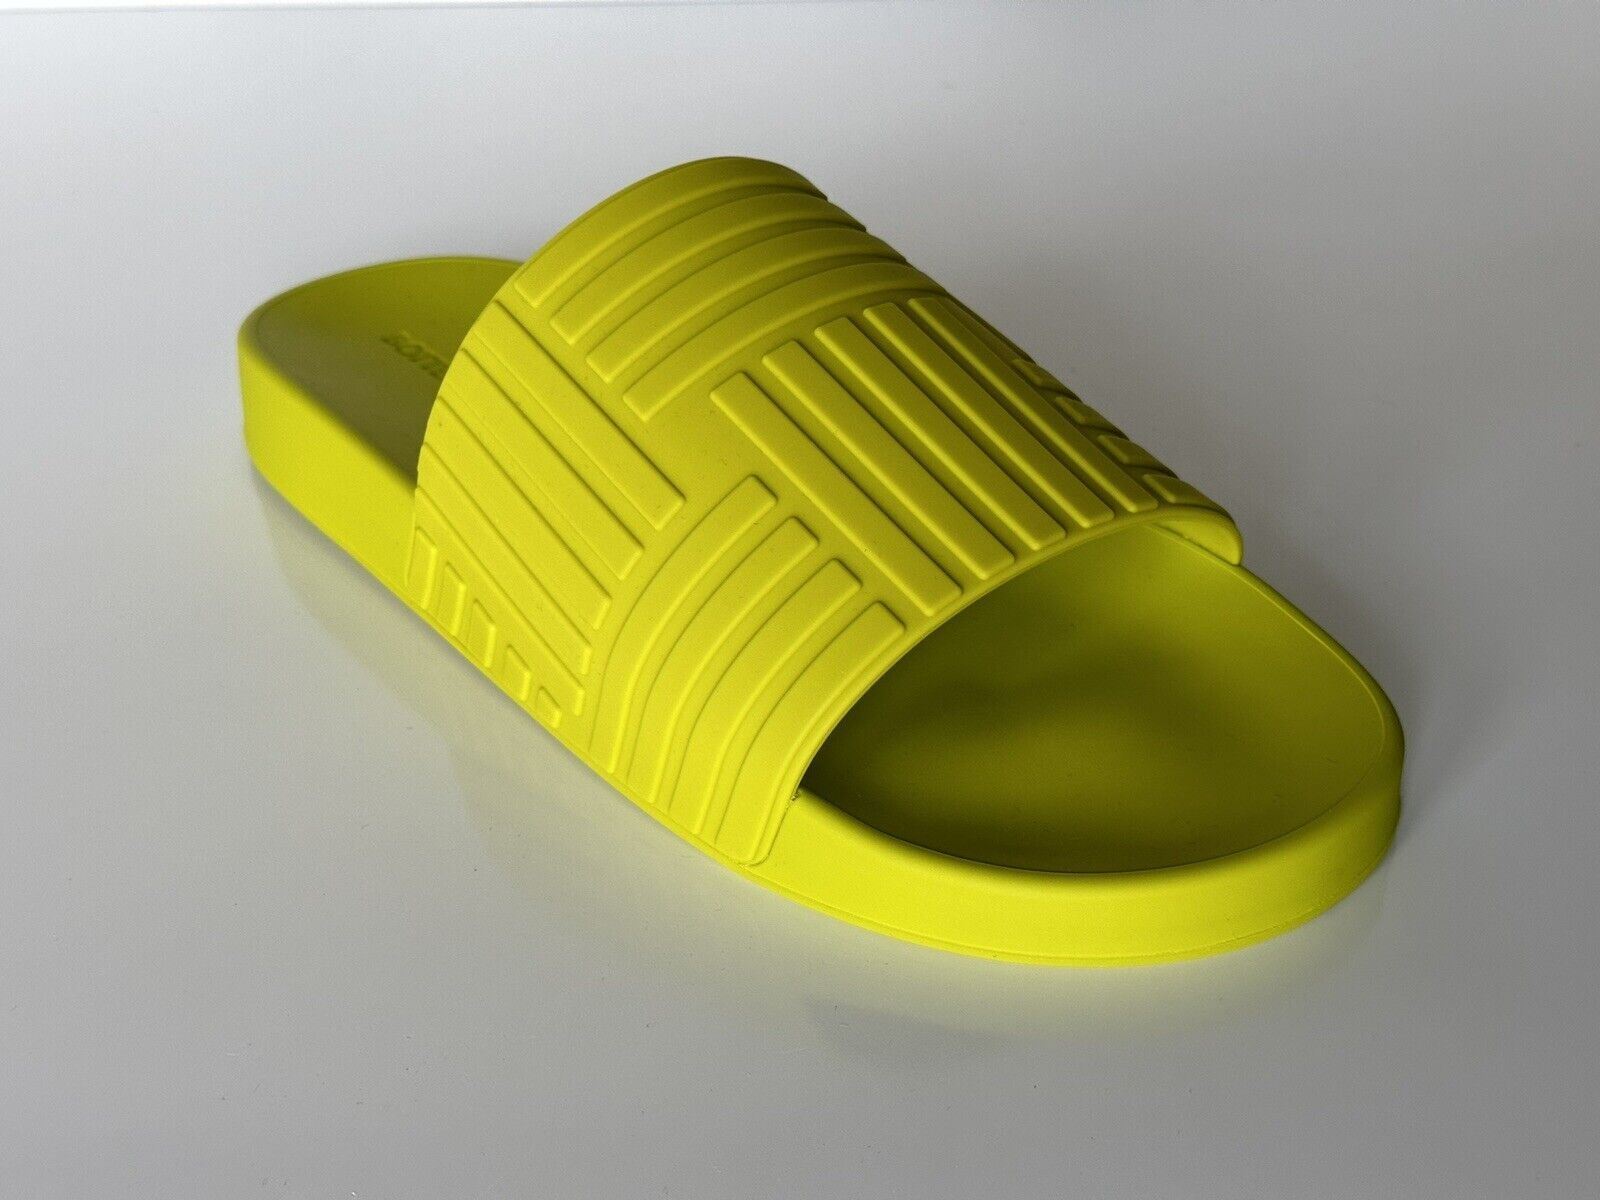 New $420 Bottega Veneta Men's Rubber Kiwi Slides Sandals 13 US (46 Euro) 690105